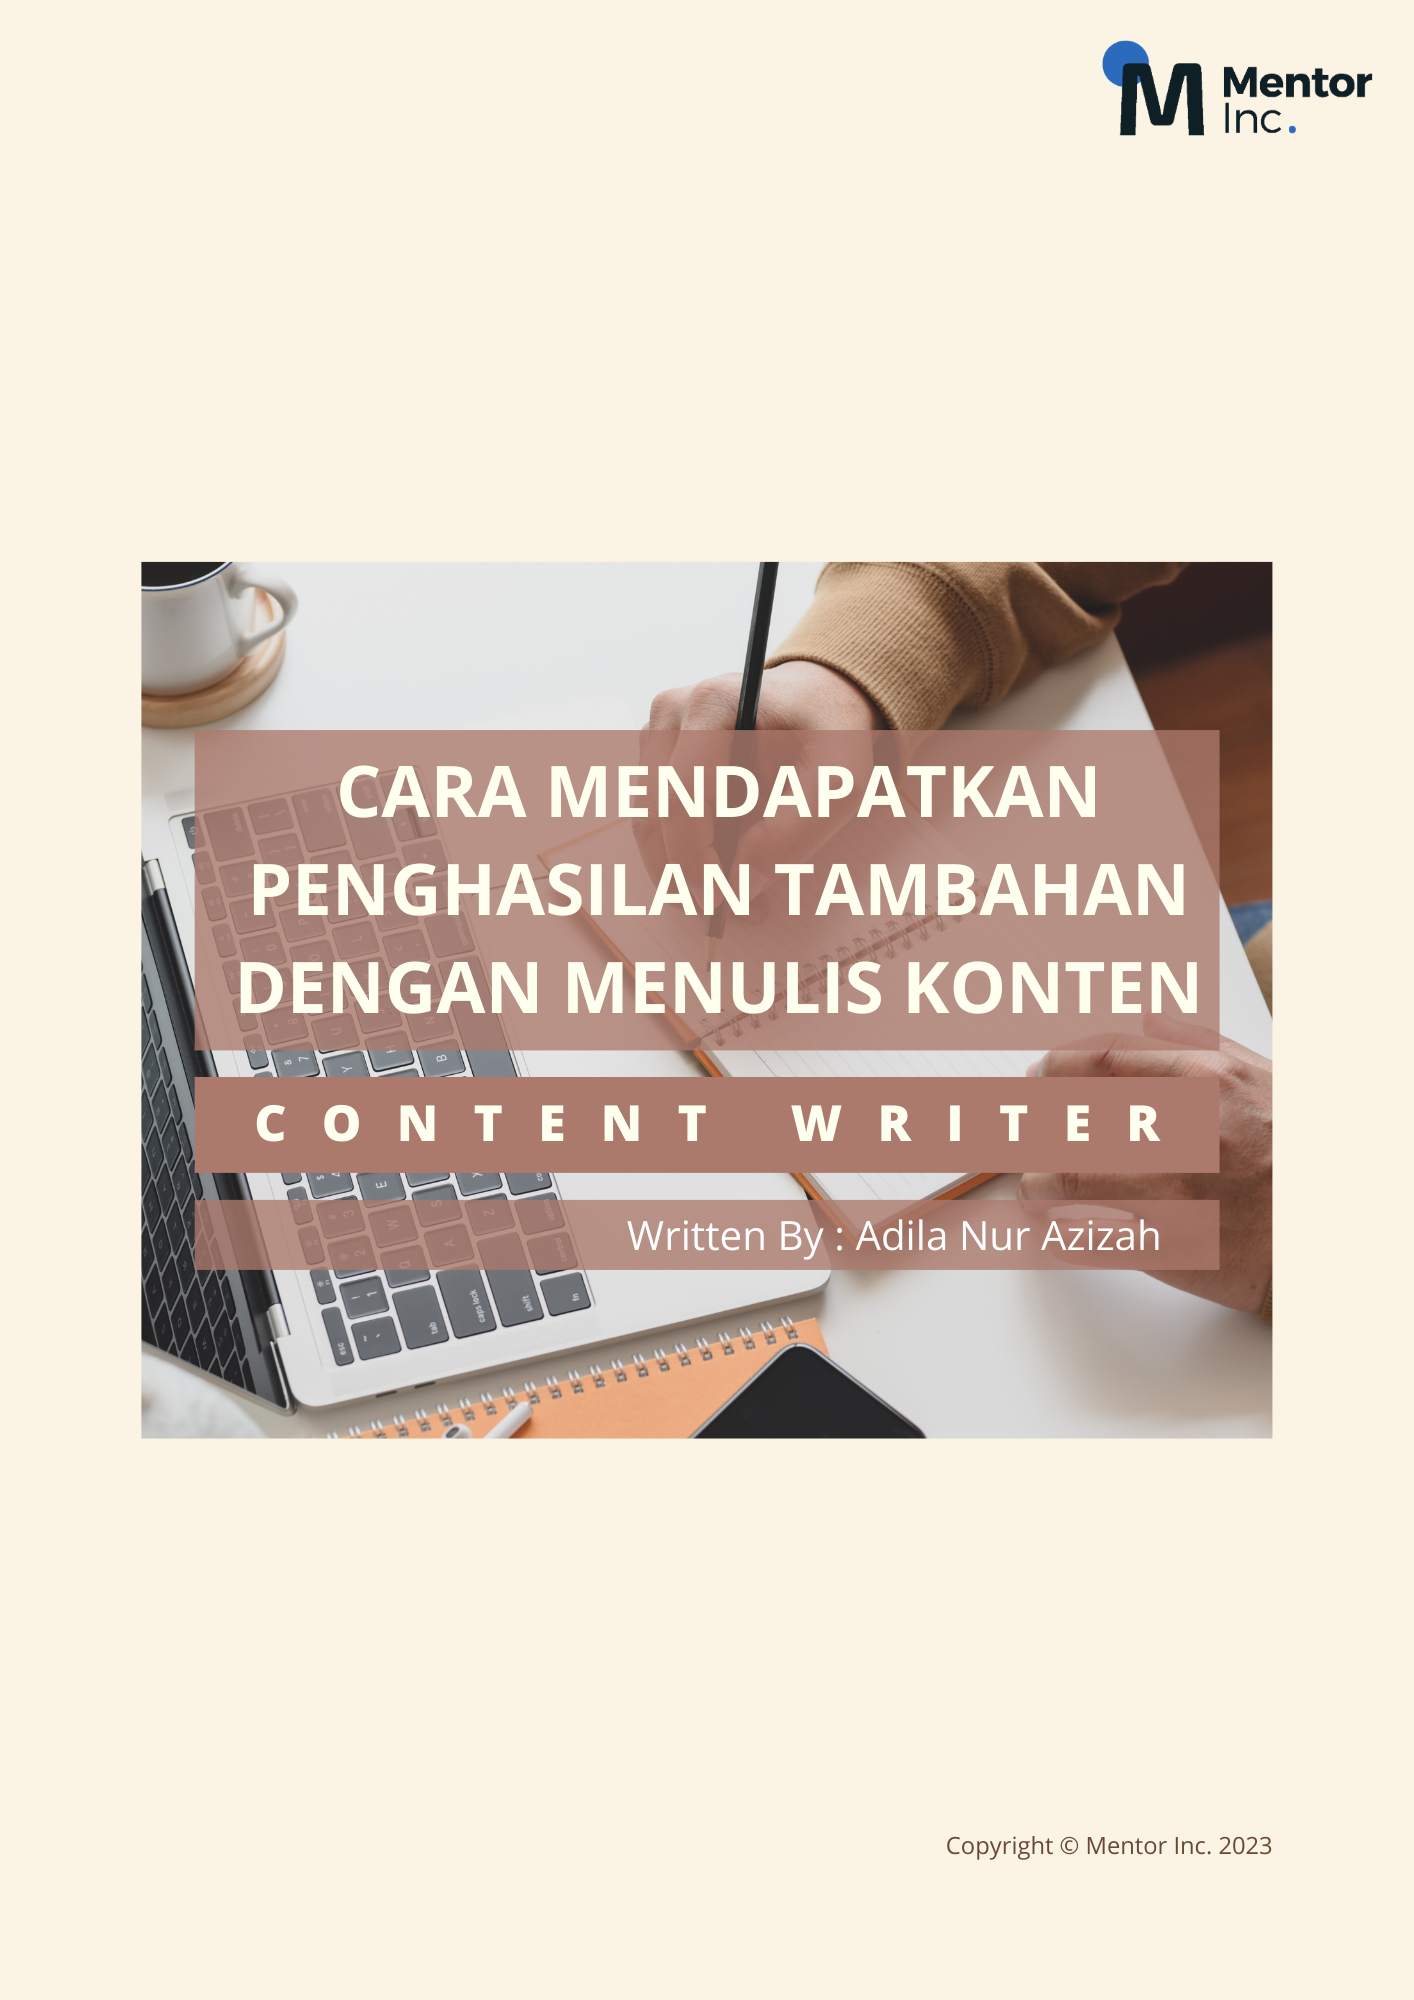 Cara Mendapatkan Penghasilan Tambahan dengan Menulis Konten (Content Writer)